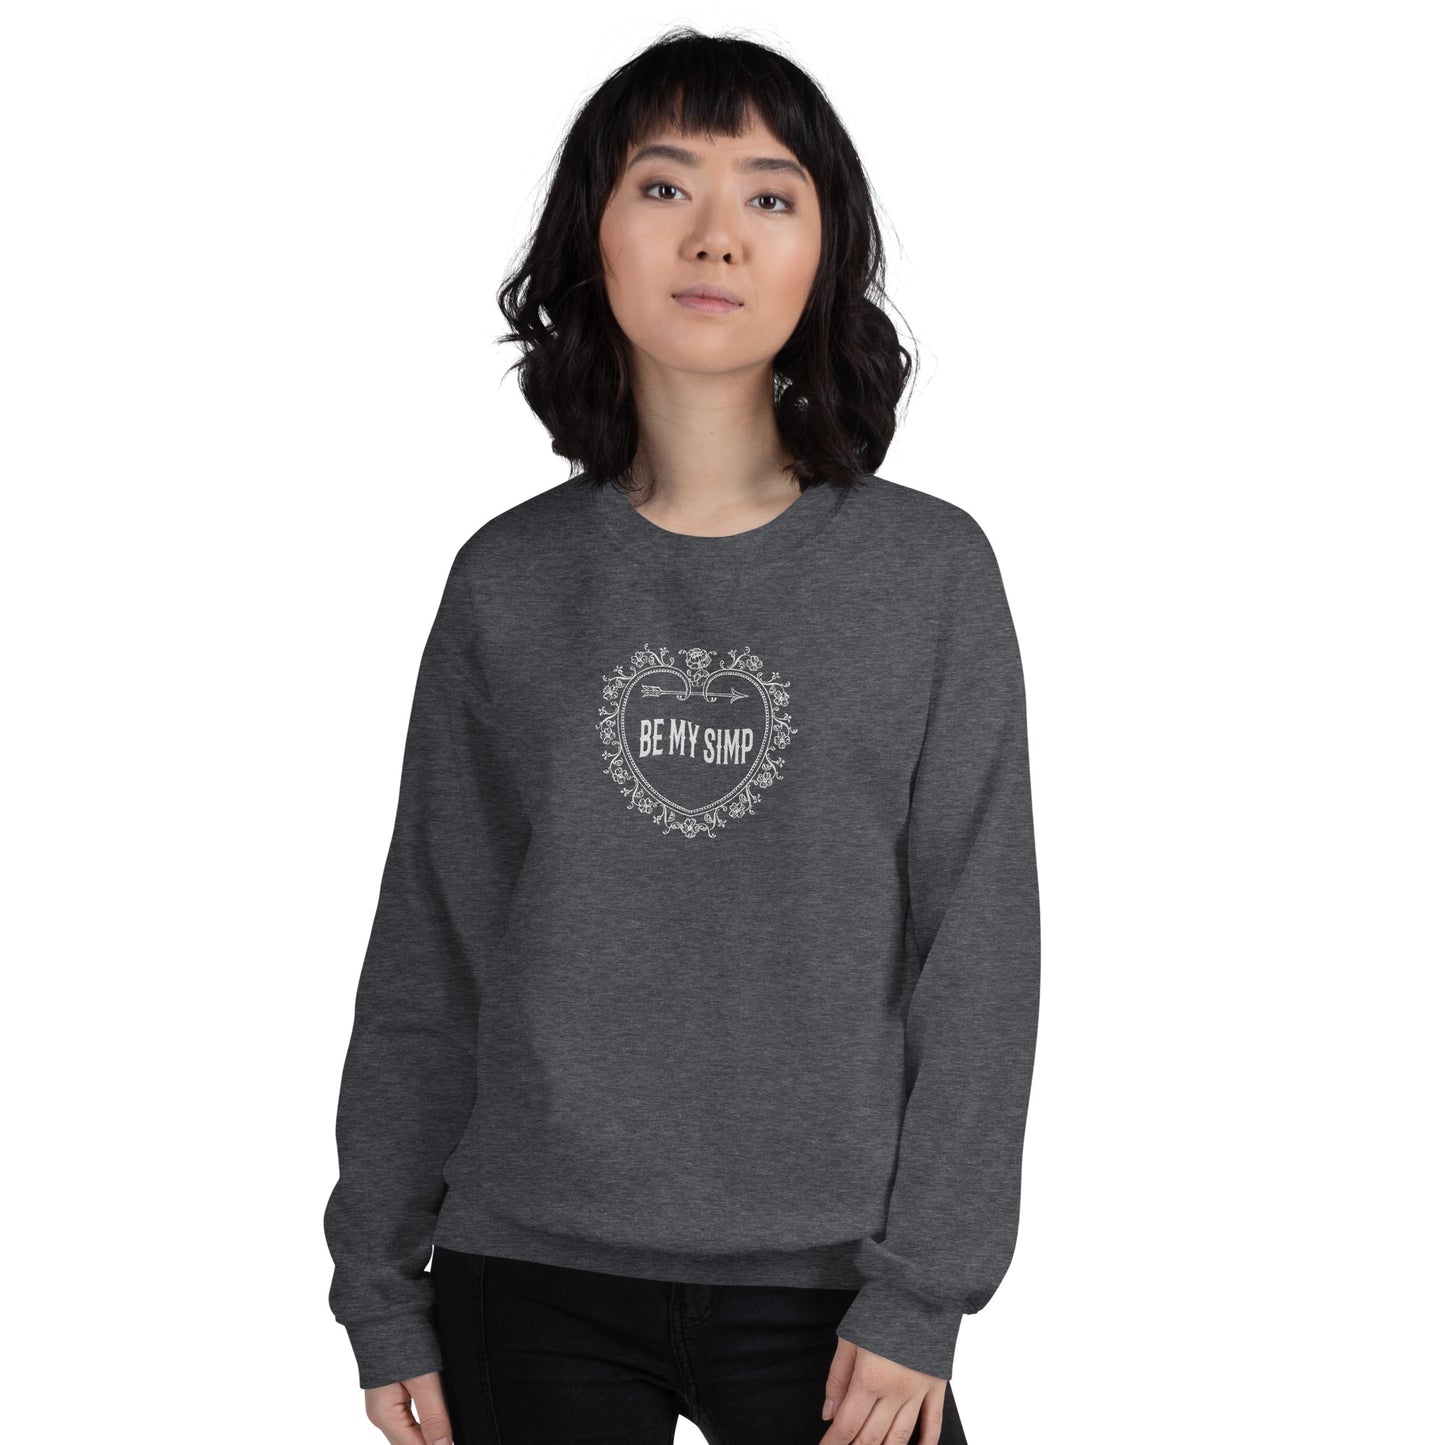 Be My Simp Embroidered Sweatshirt Dark Heather